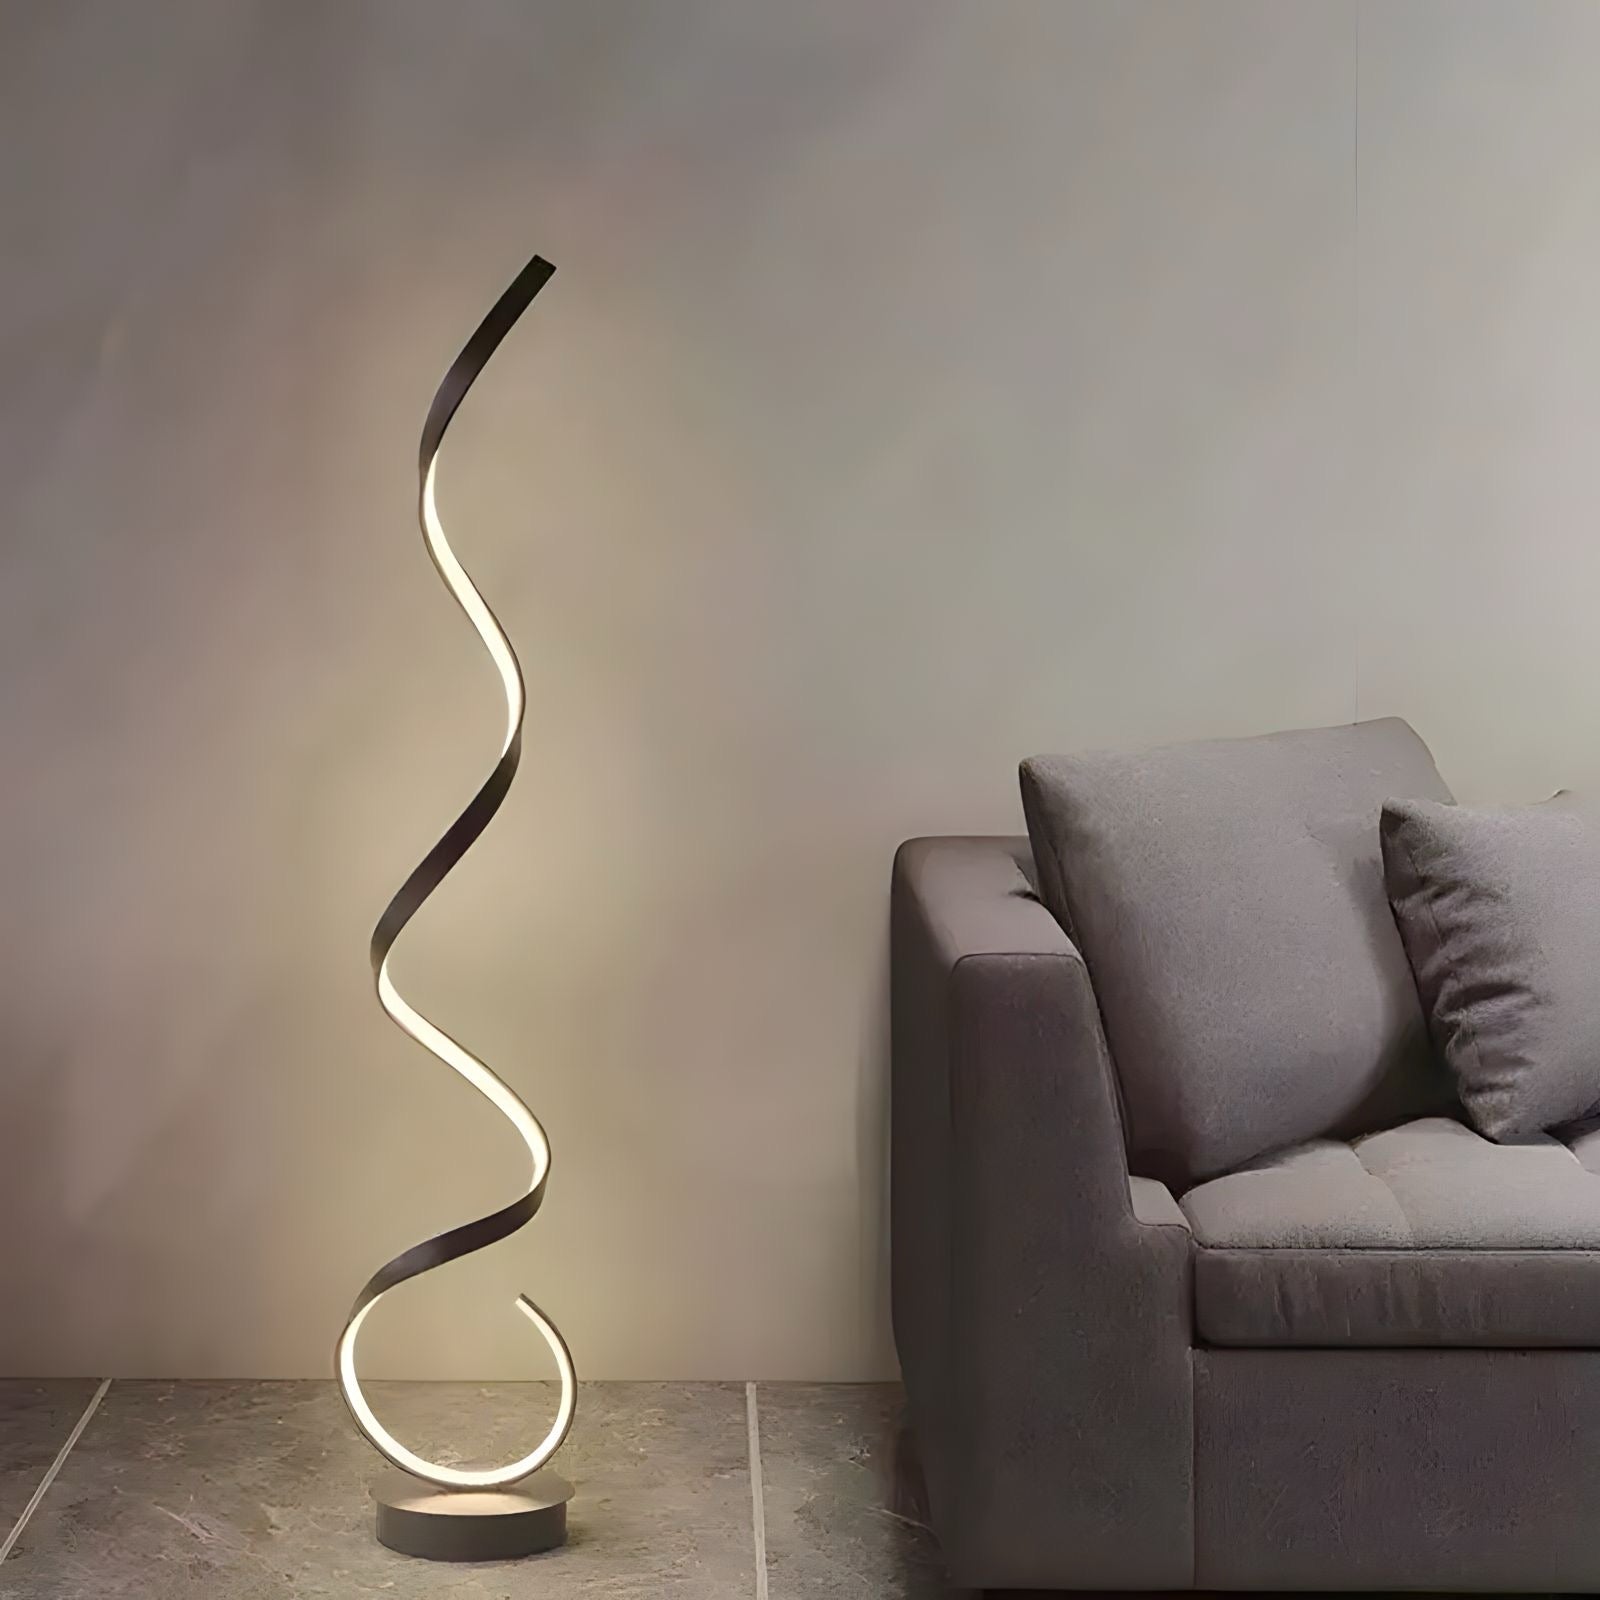 Stehlampe im Spiral Design - BUYnBLUE 